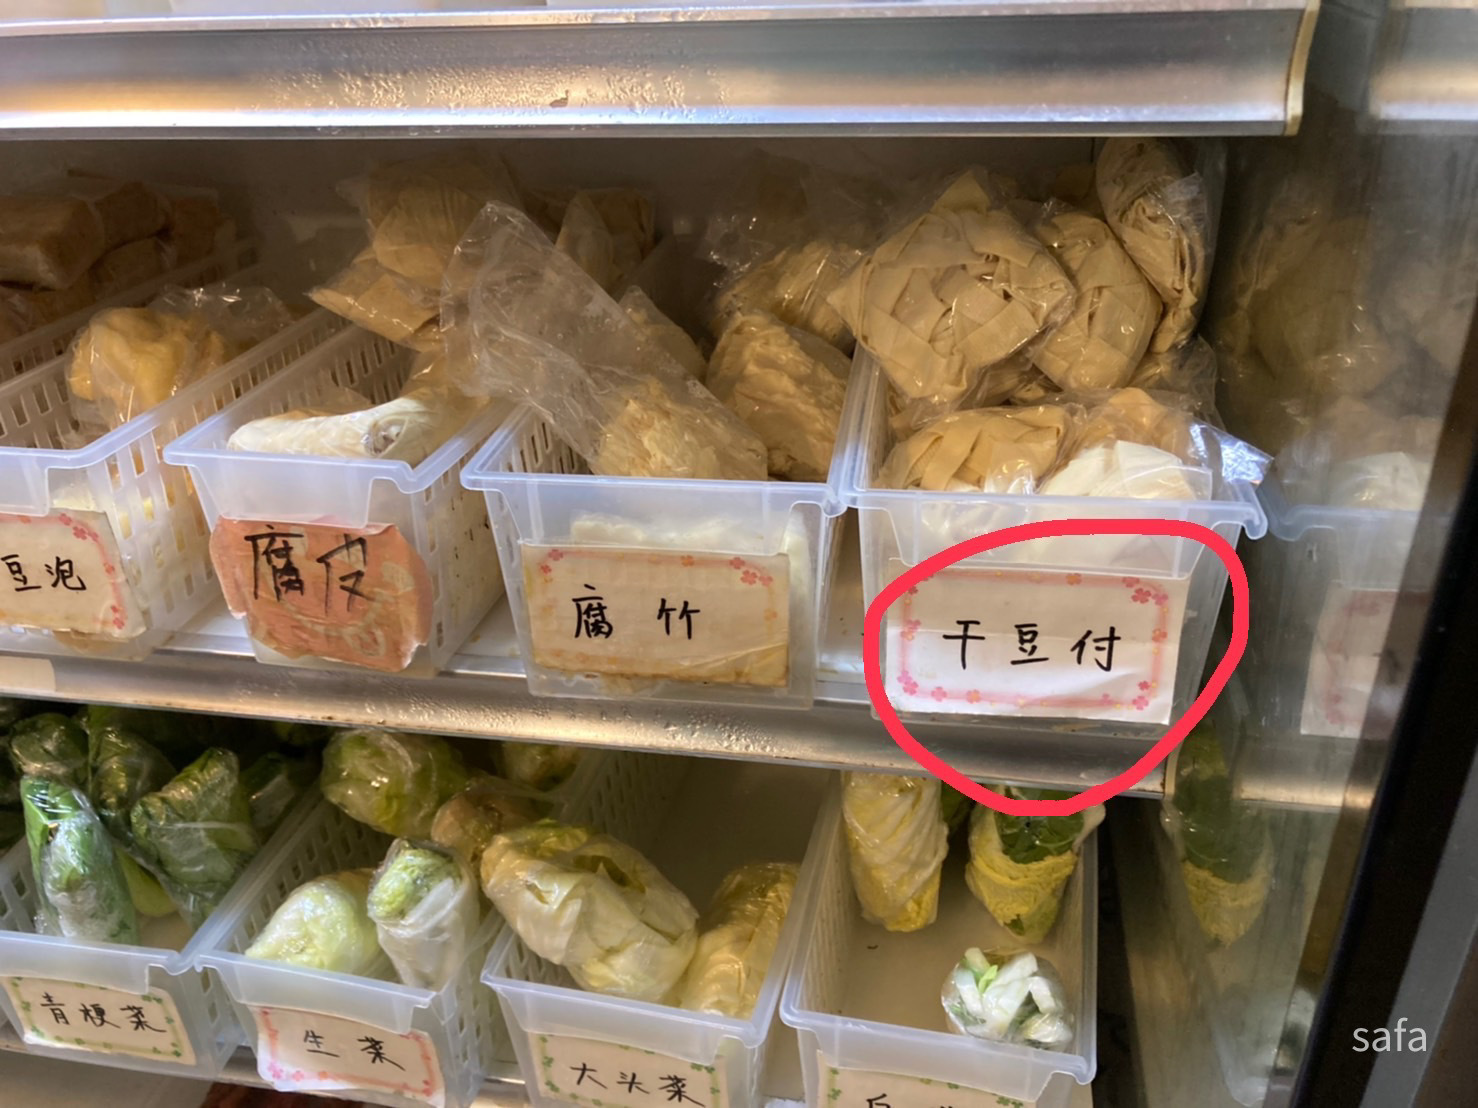 干豆腐。シート状の豆腐みたいなものでおいしいです。